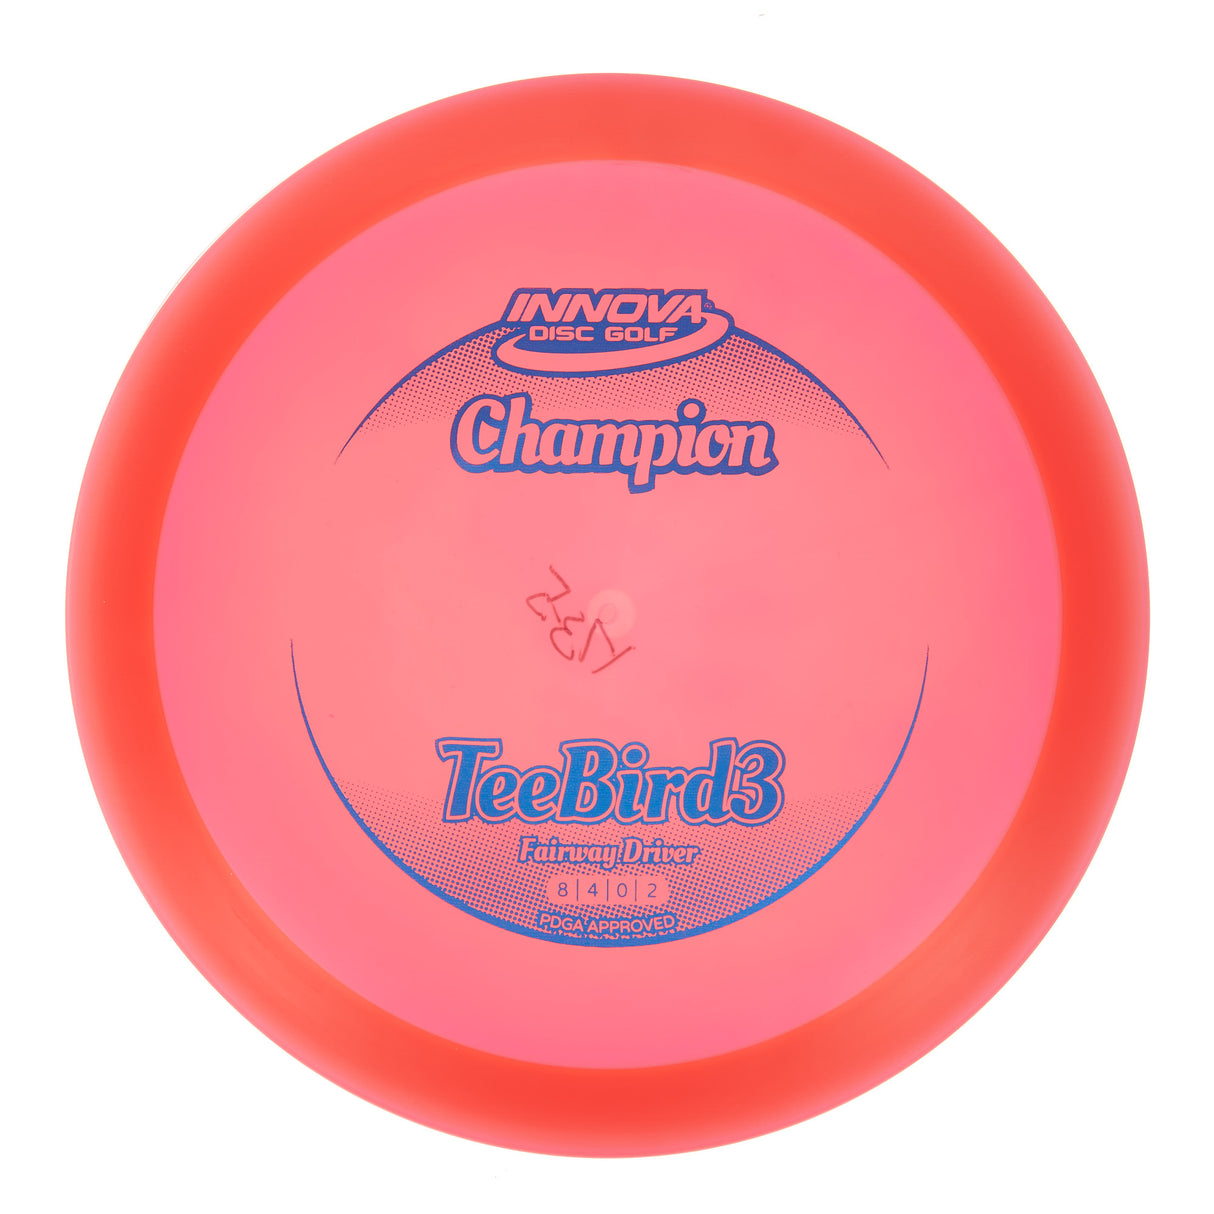 Innova Teebird3 - Champion 177g | Style 0002